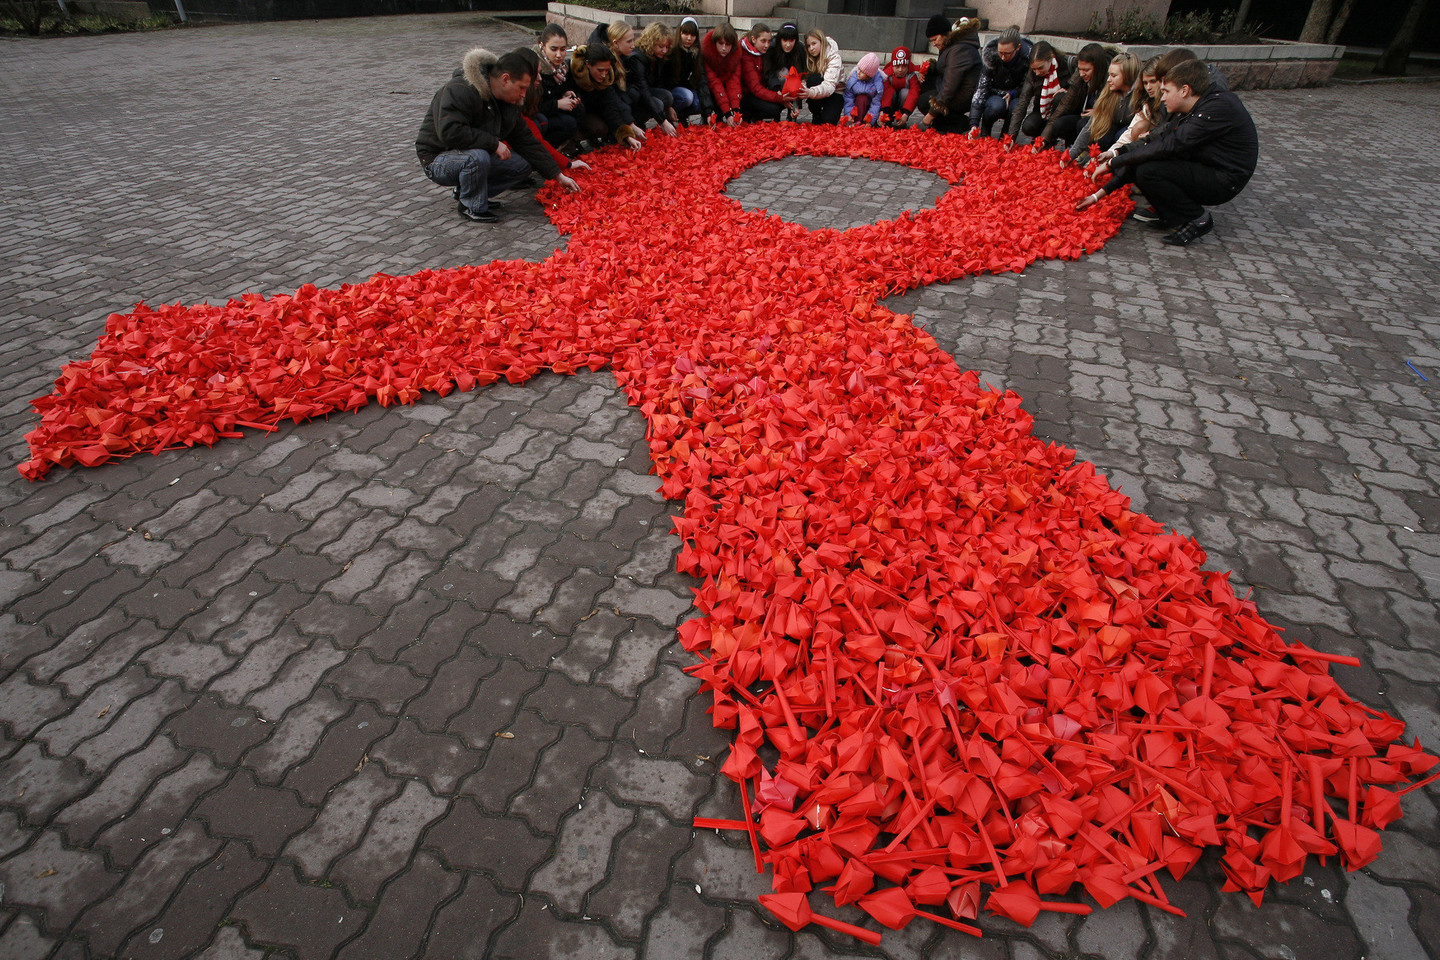 V.Pokrovskio teigimu, iš tikrųjų užsikrėtusių ŽIV Rusijoje gali būti net iki 1,5 mln., o tai sudarytų mažiausiai 1 proc. visos šalies populiacijos.<br>„Reuters“/“Scanpix“ nuotr.